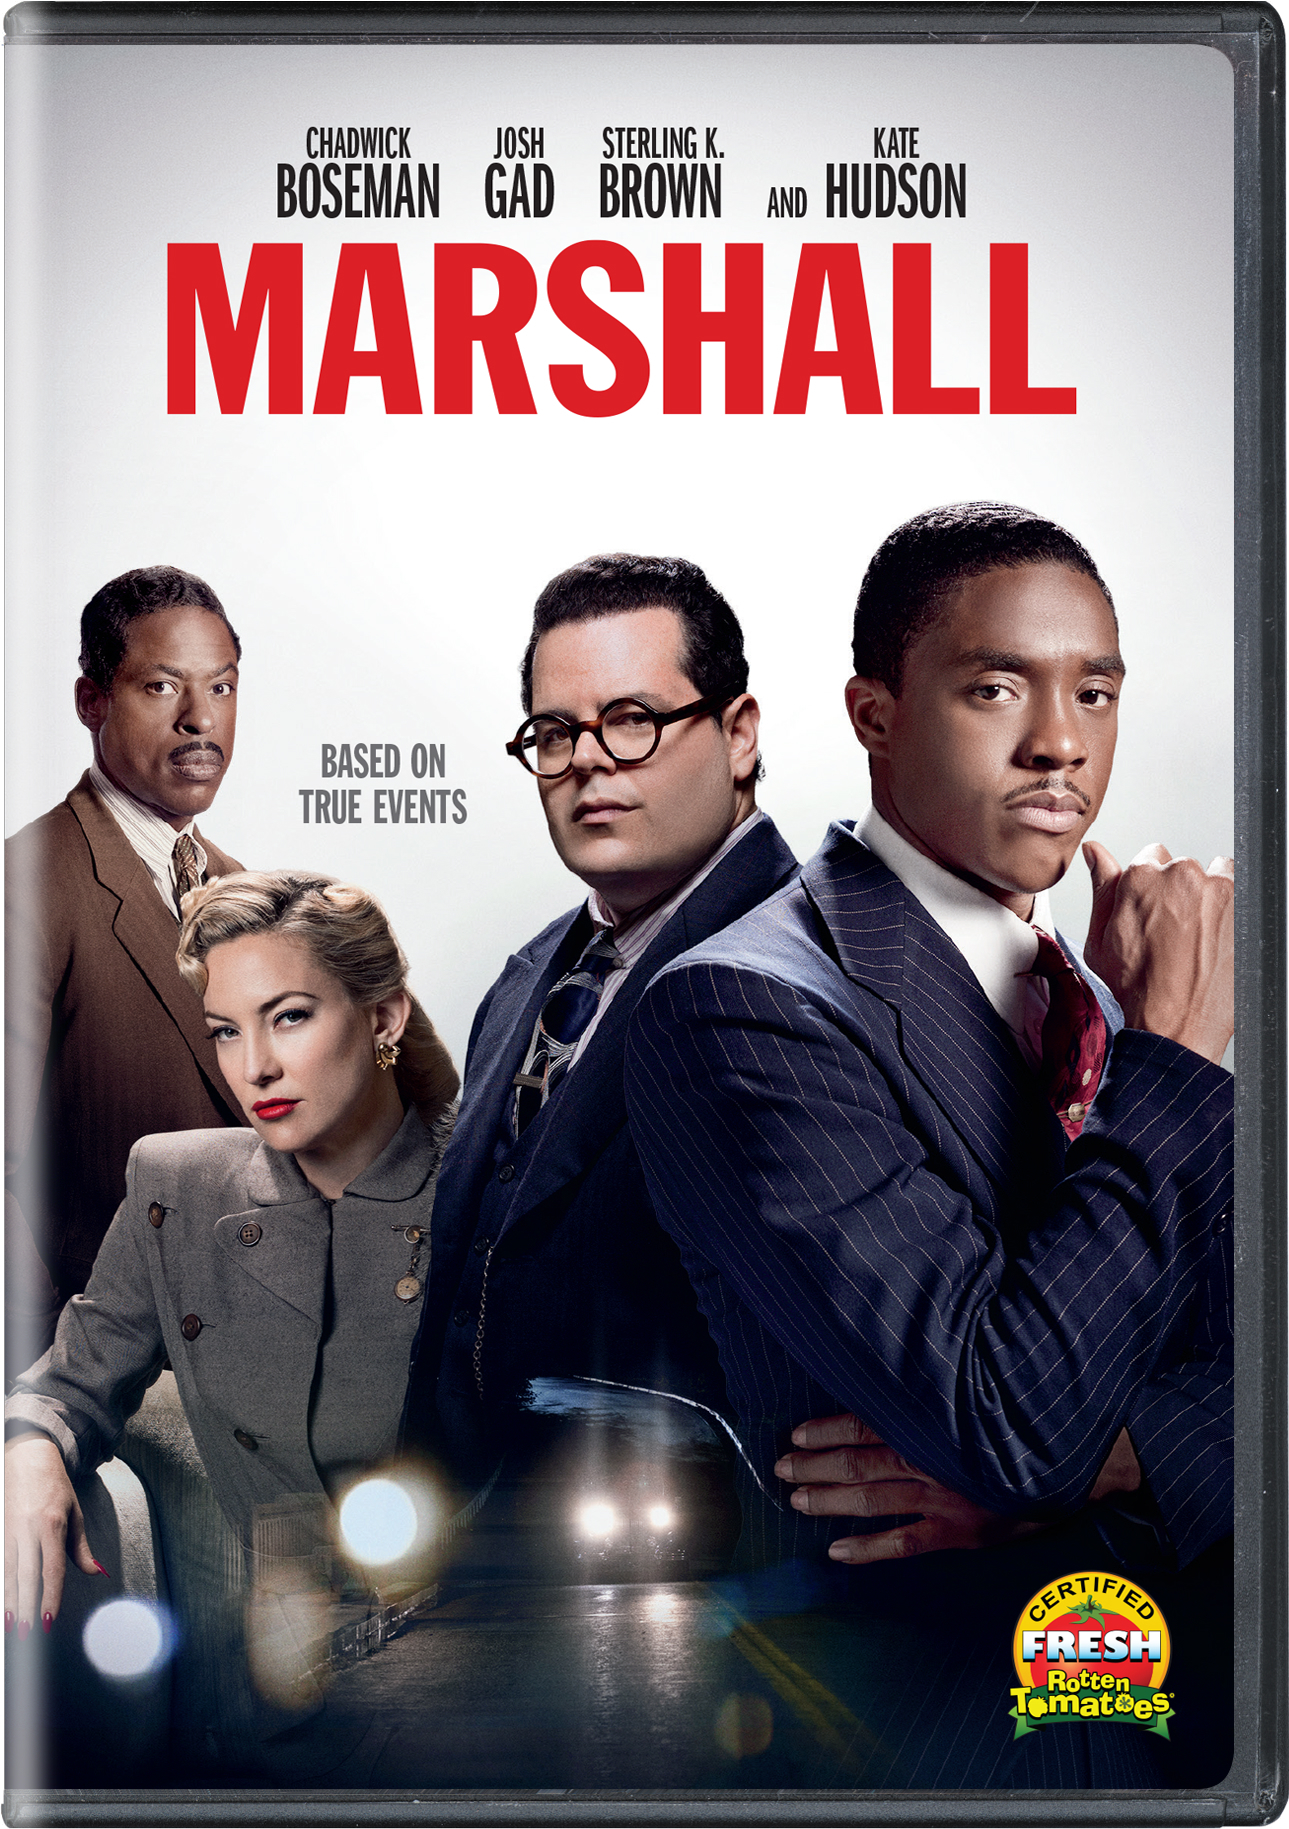 Marshall - DVD [ 2017 ]  - Drama Movies On DVD - Movies On GRUV